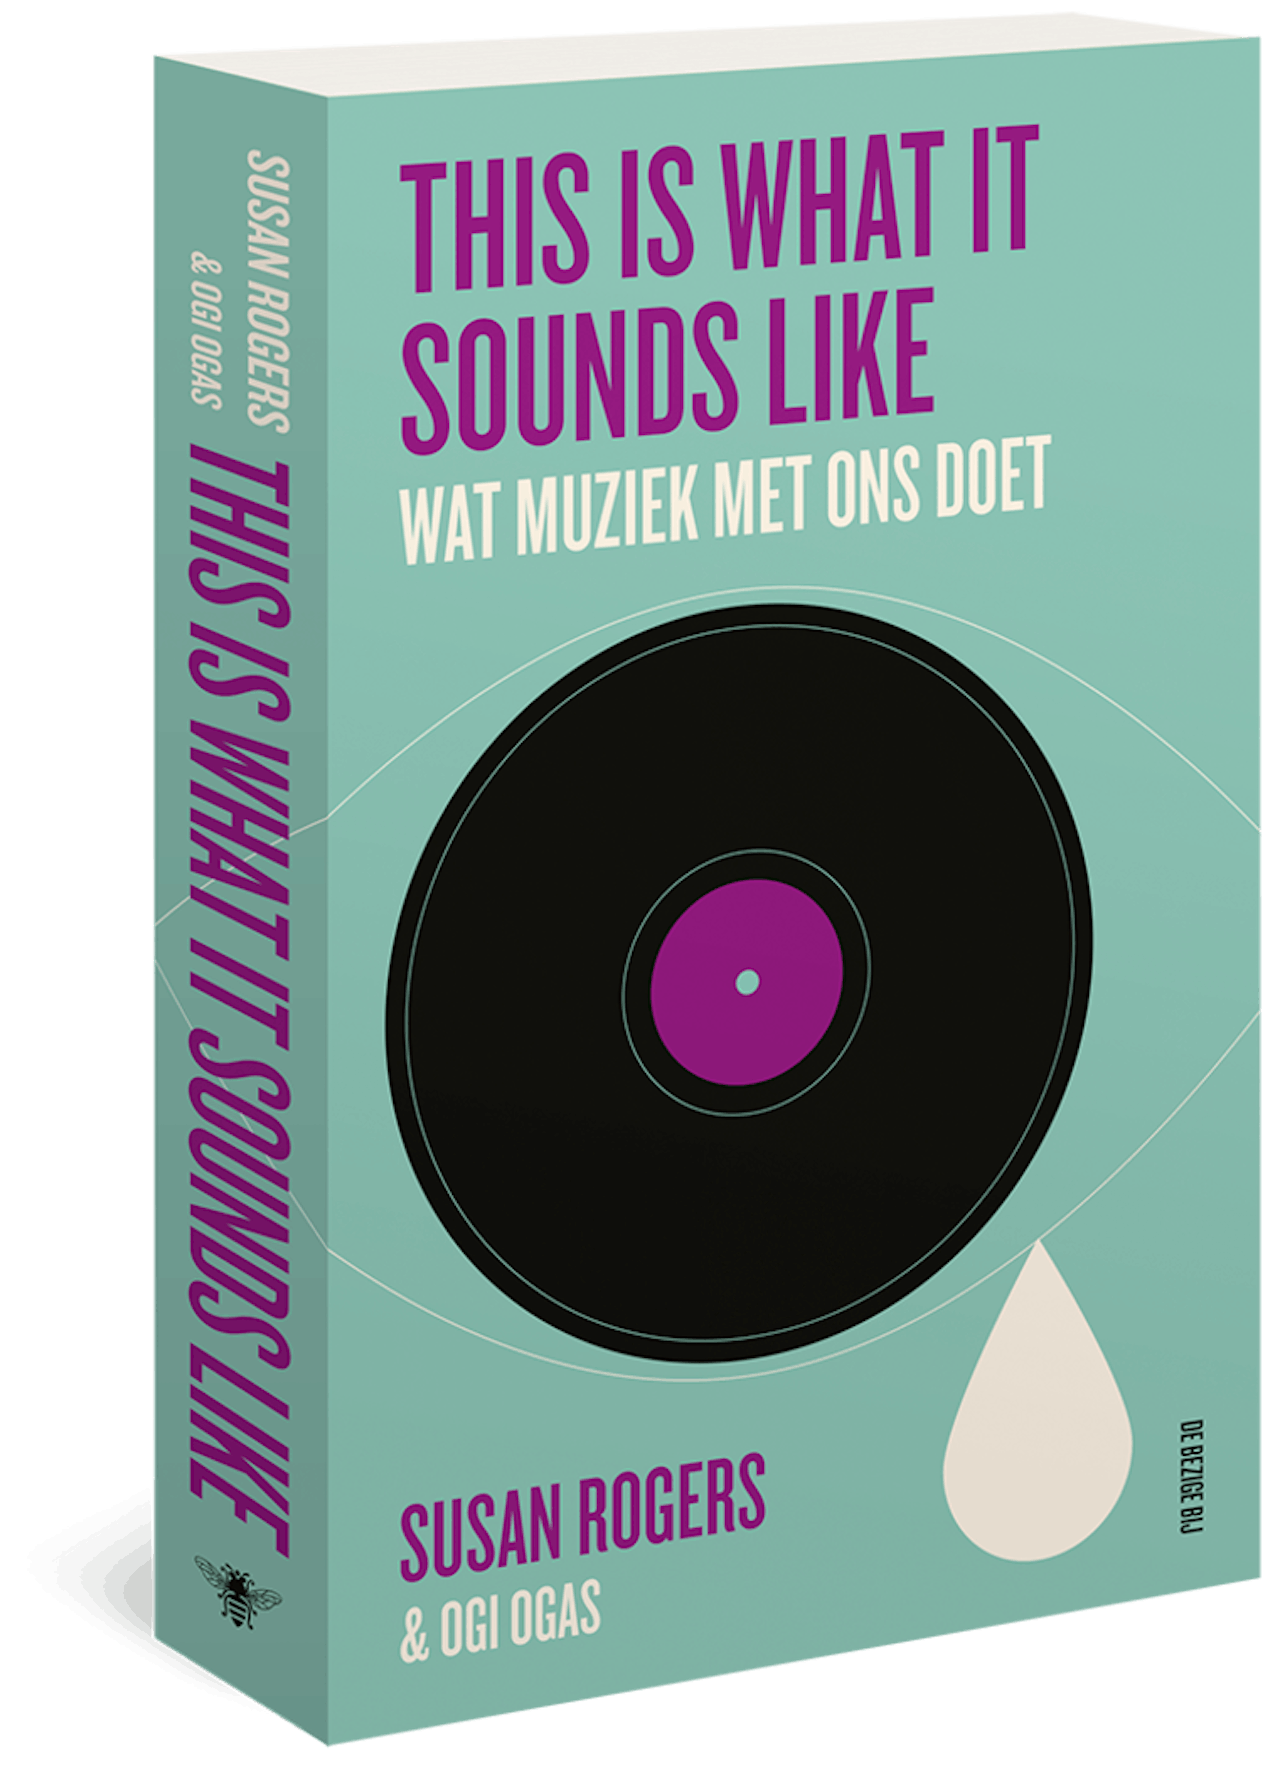 De cover van het boek 'This is what it sounds like' van Susan Rogers en Ogi Ogas. Onder de titel staat de tekst 'Wat muziek met ons doet'.